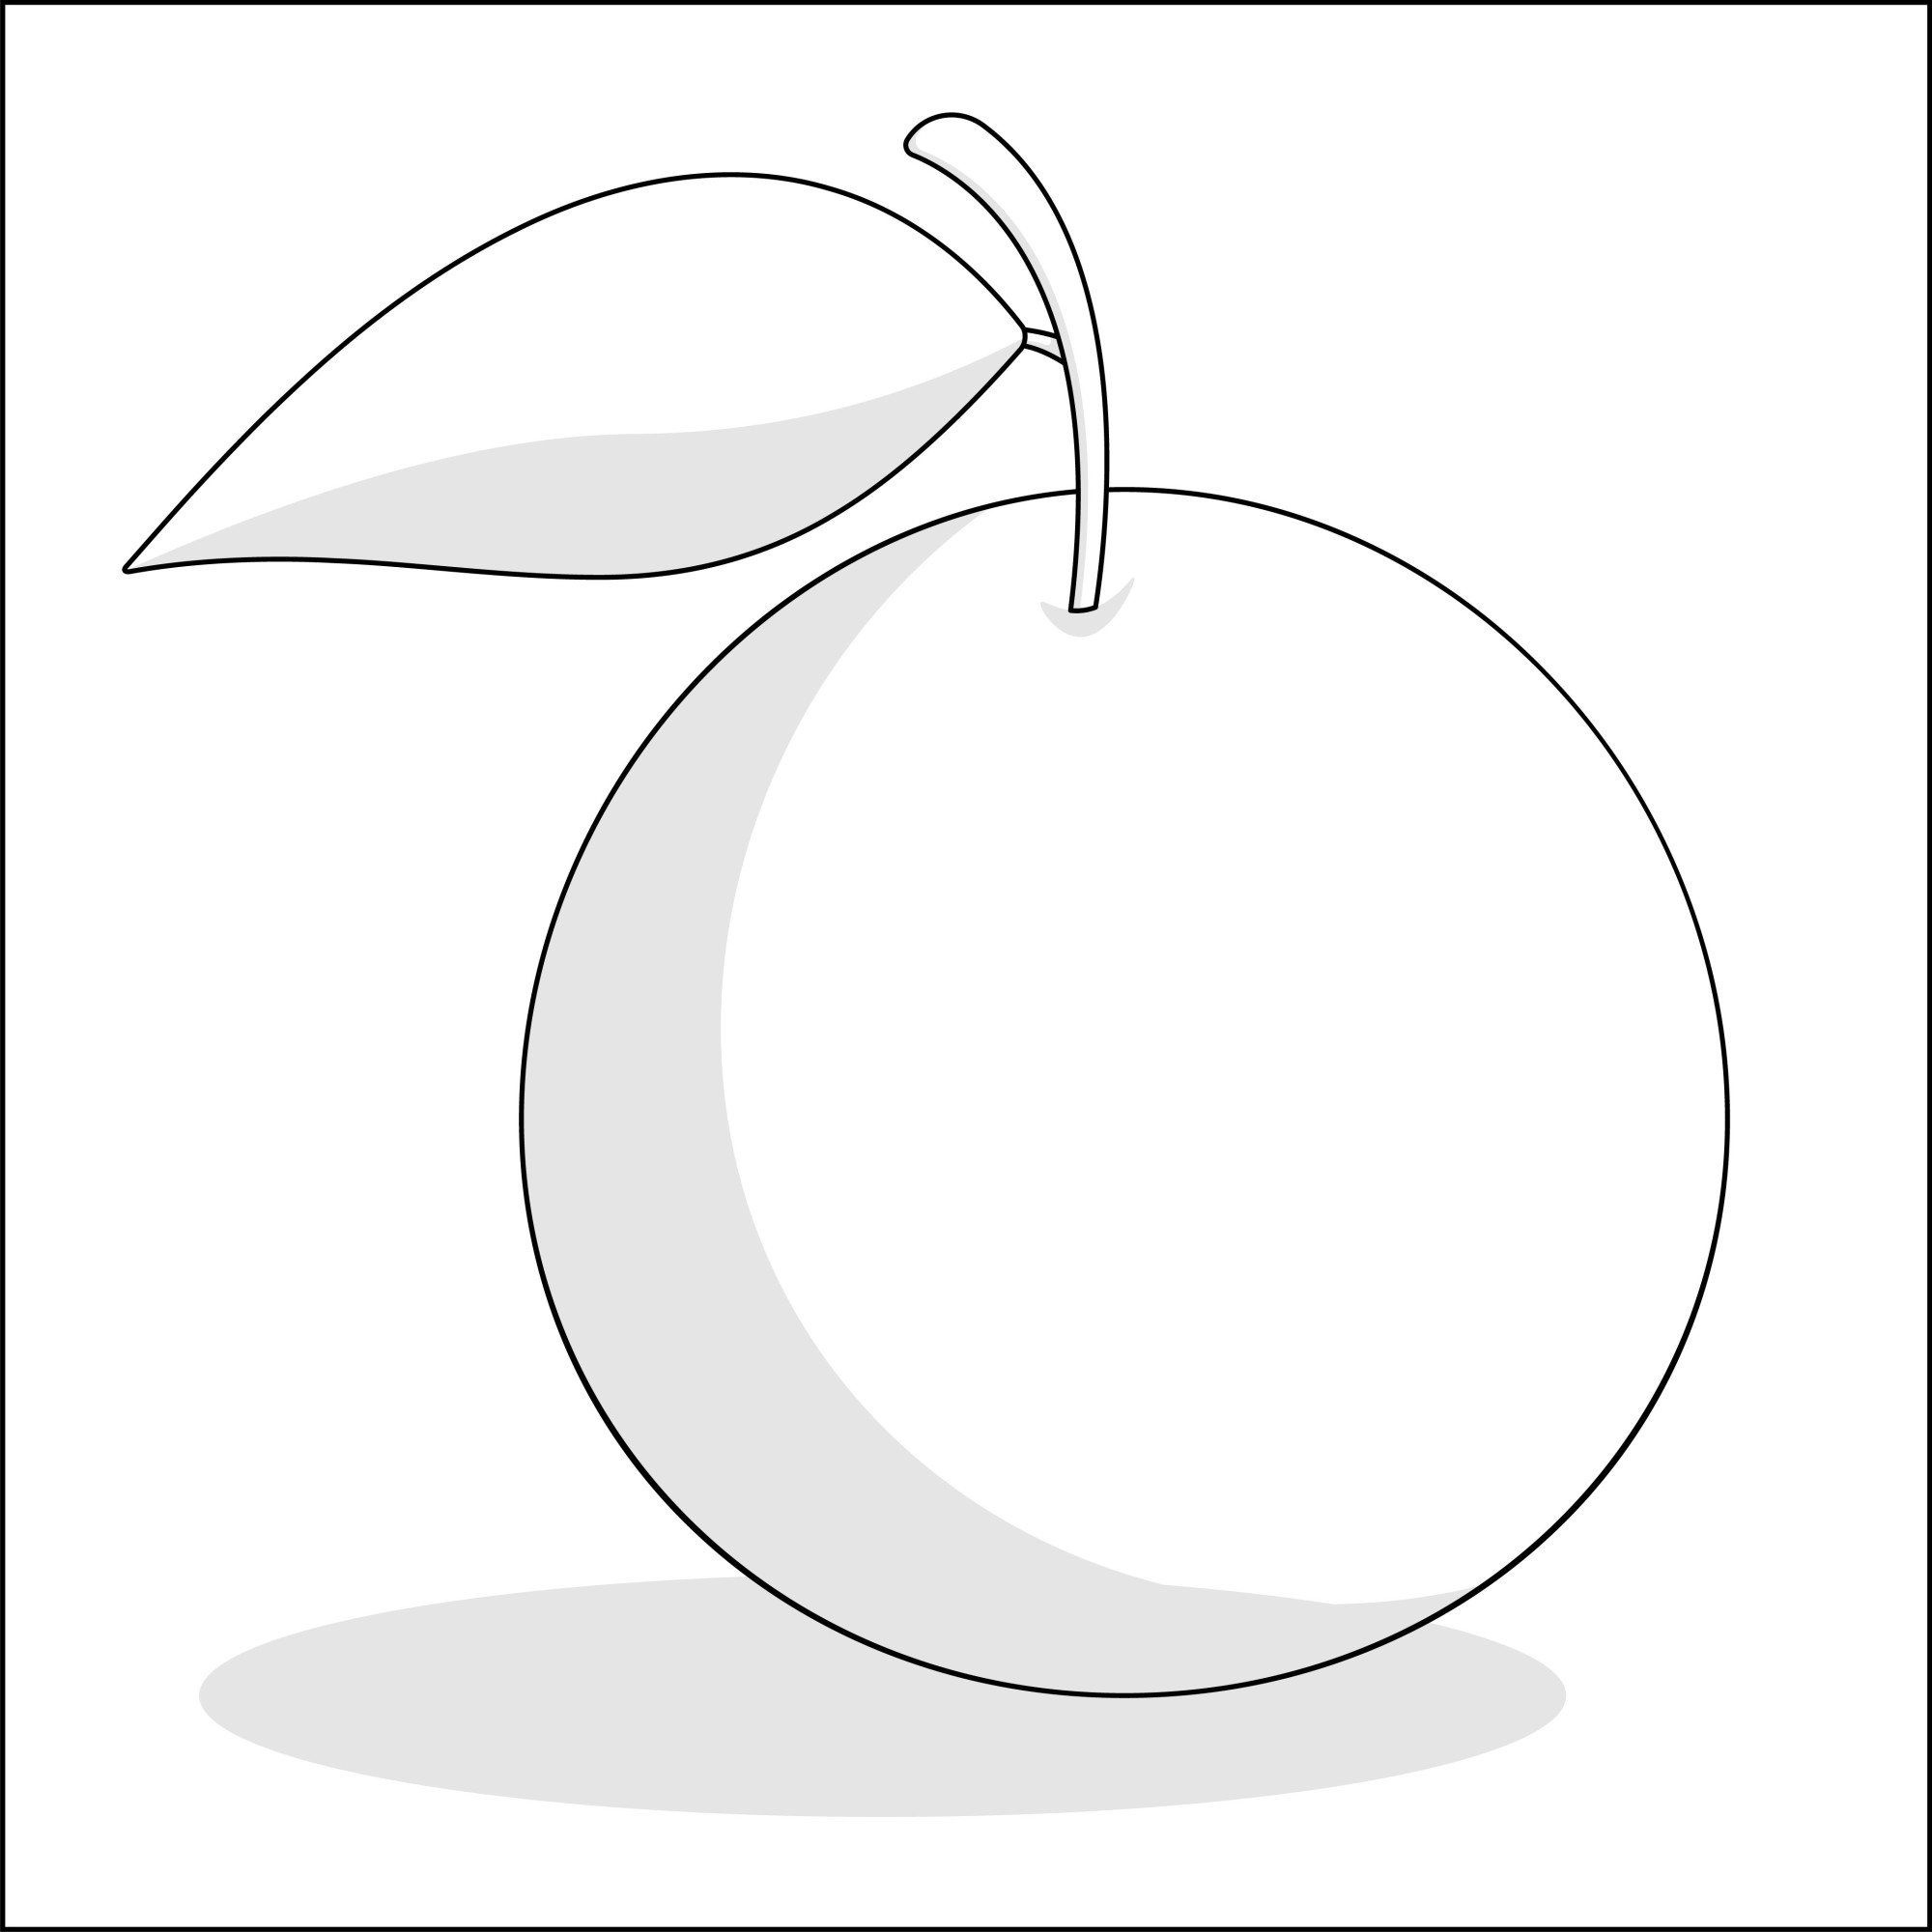 Раскраска для детей: круглый апельсин с листиком